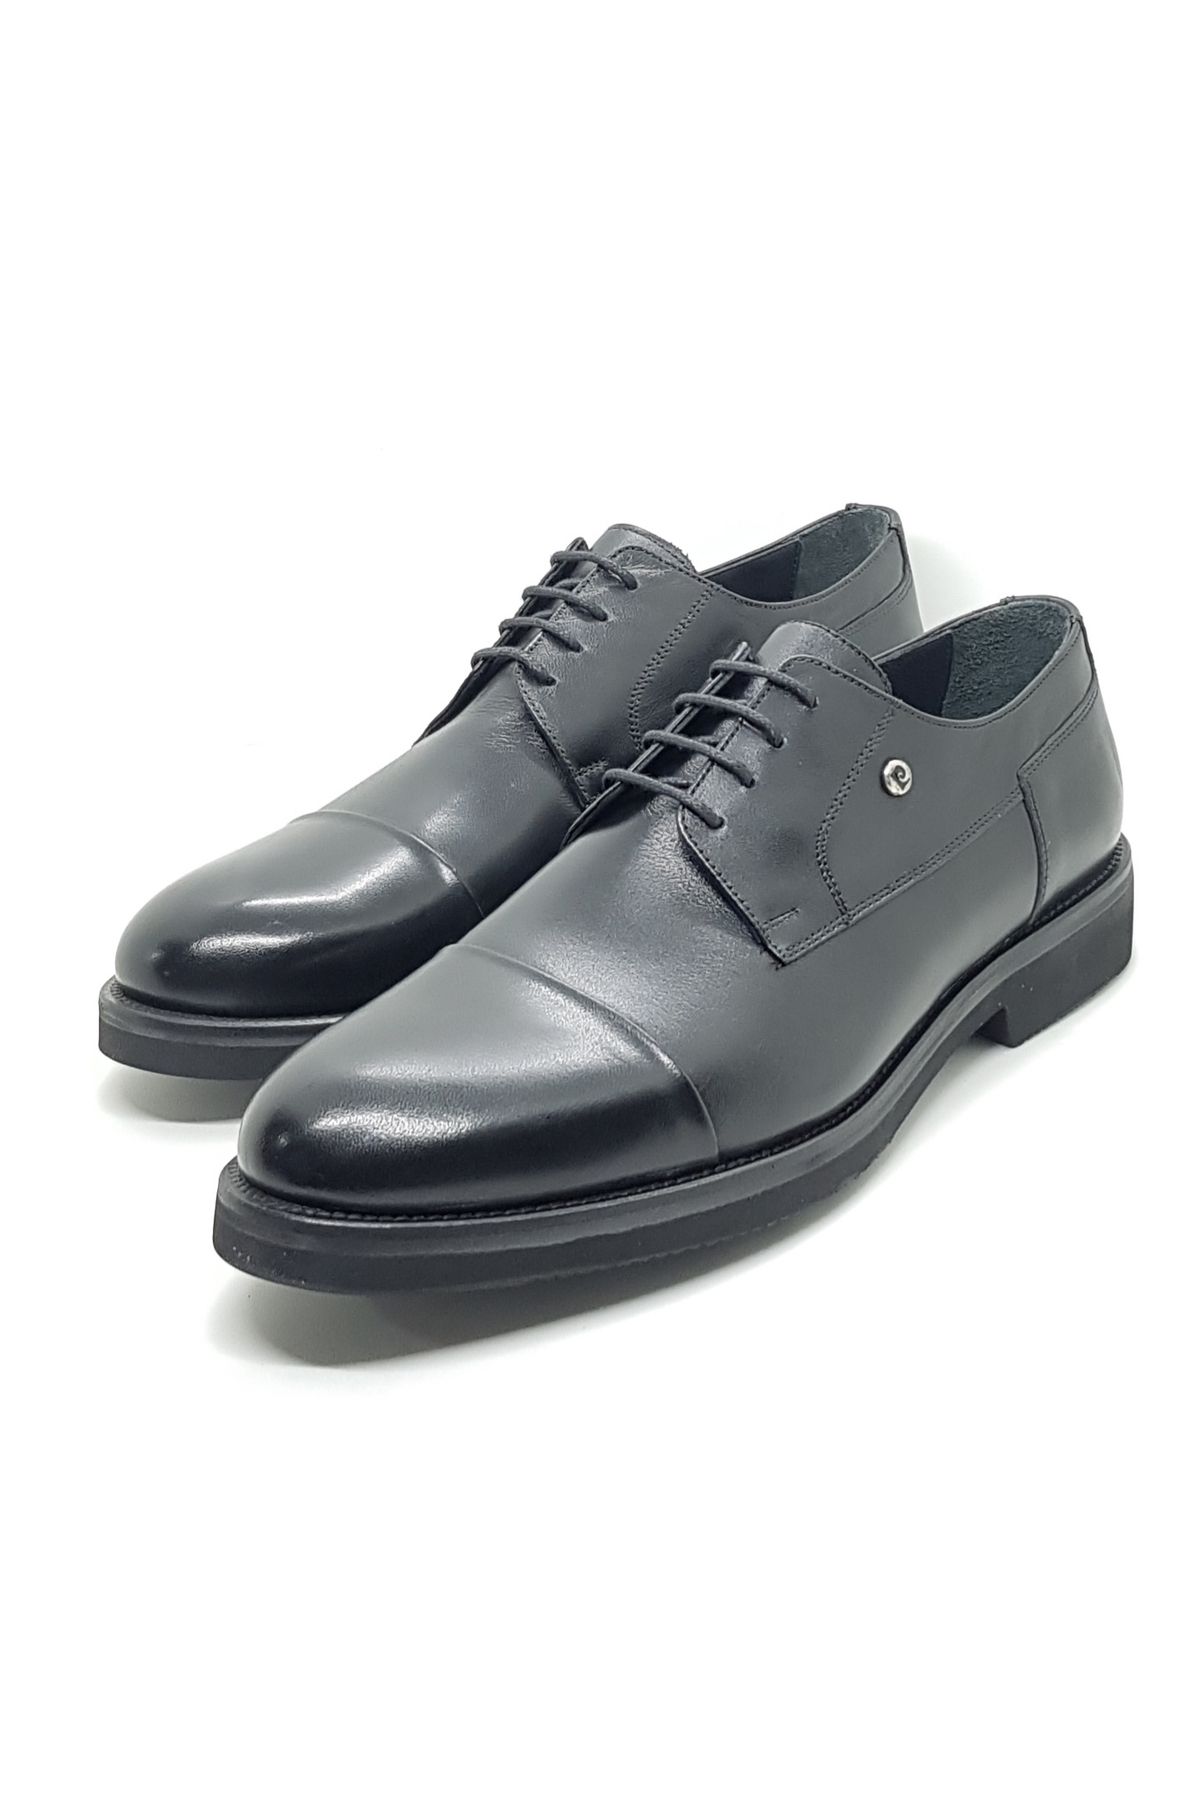 Pierre Cardin klasik erkek ayakkabı kauçuk taban